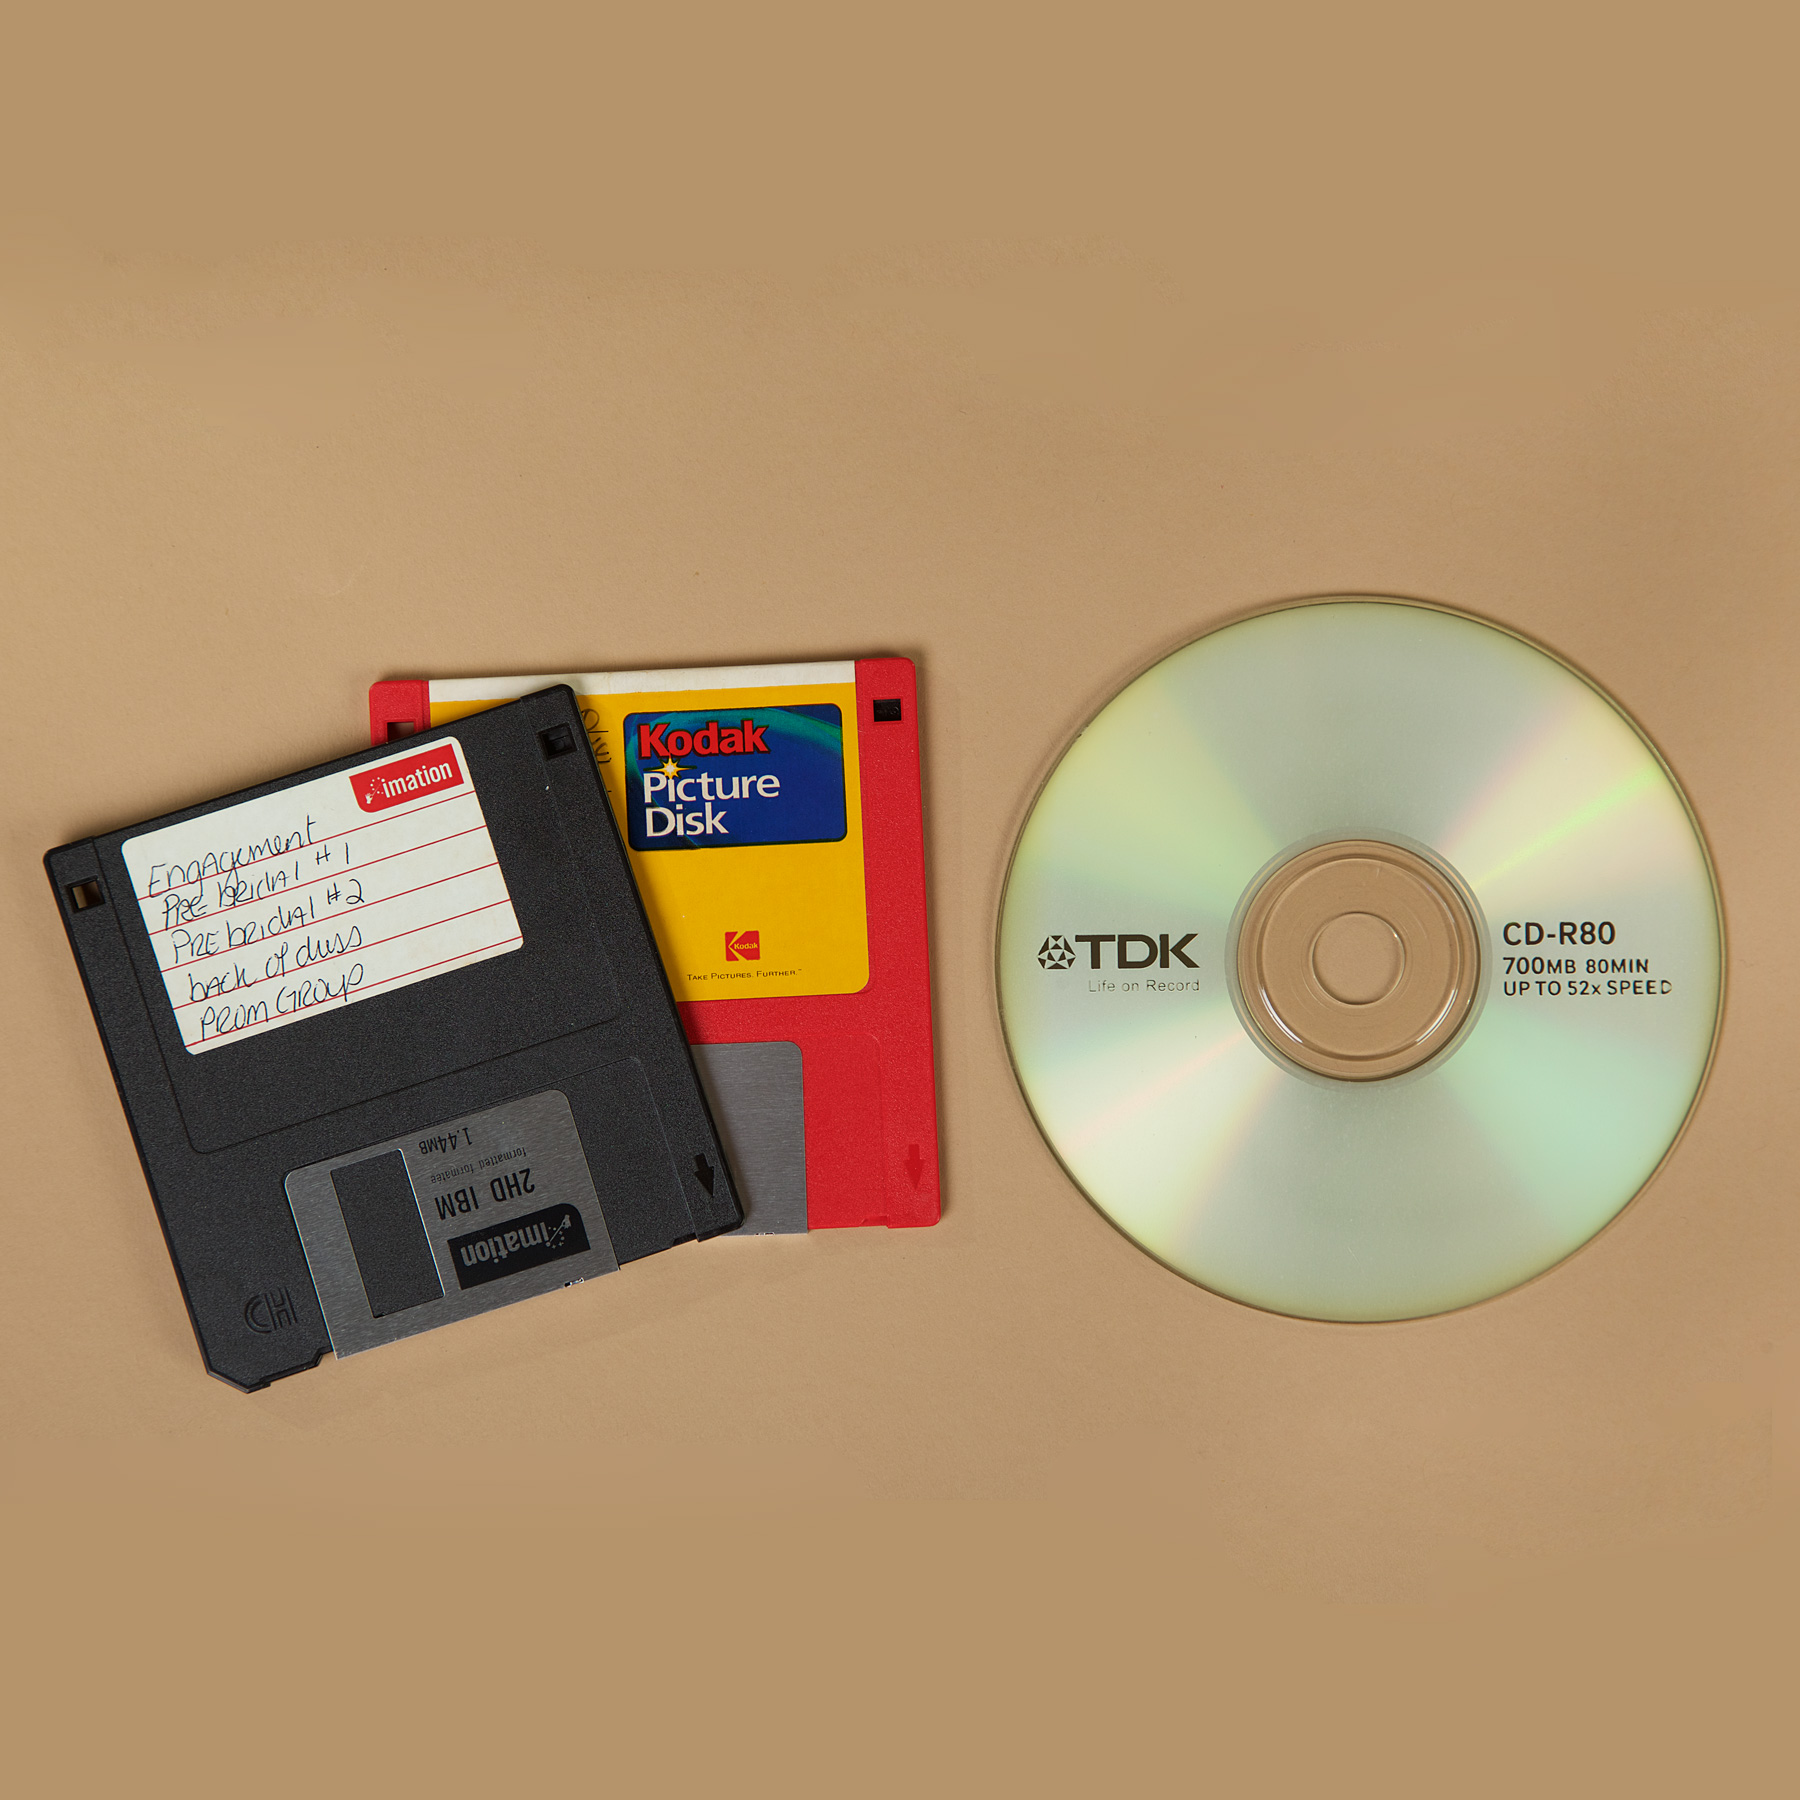 floppy discs & CD Rom